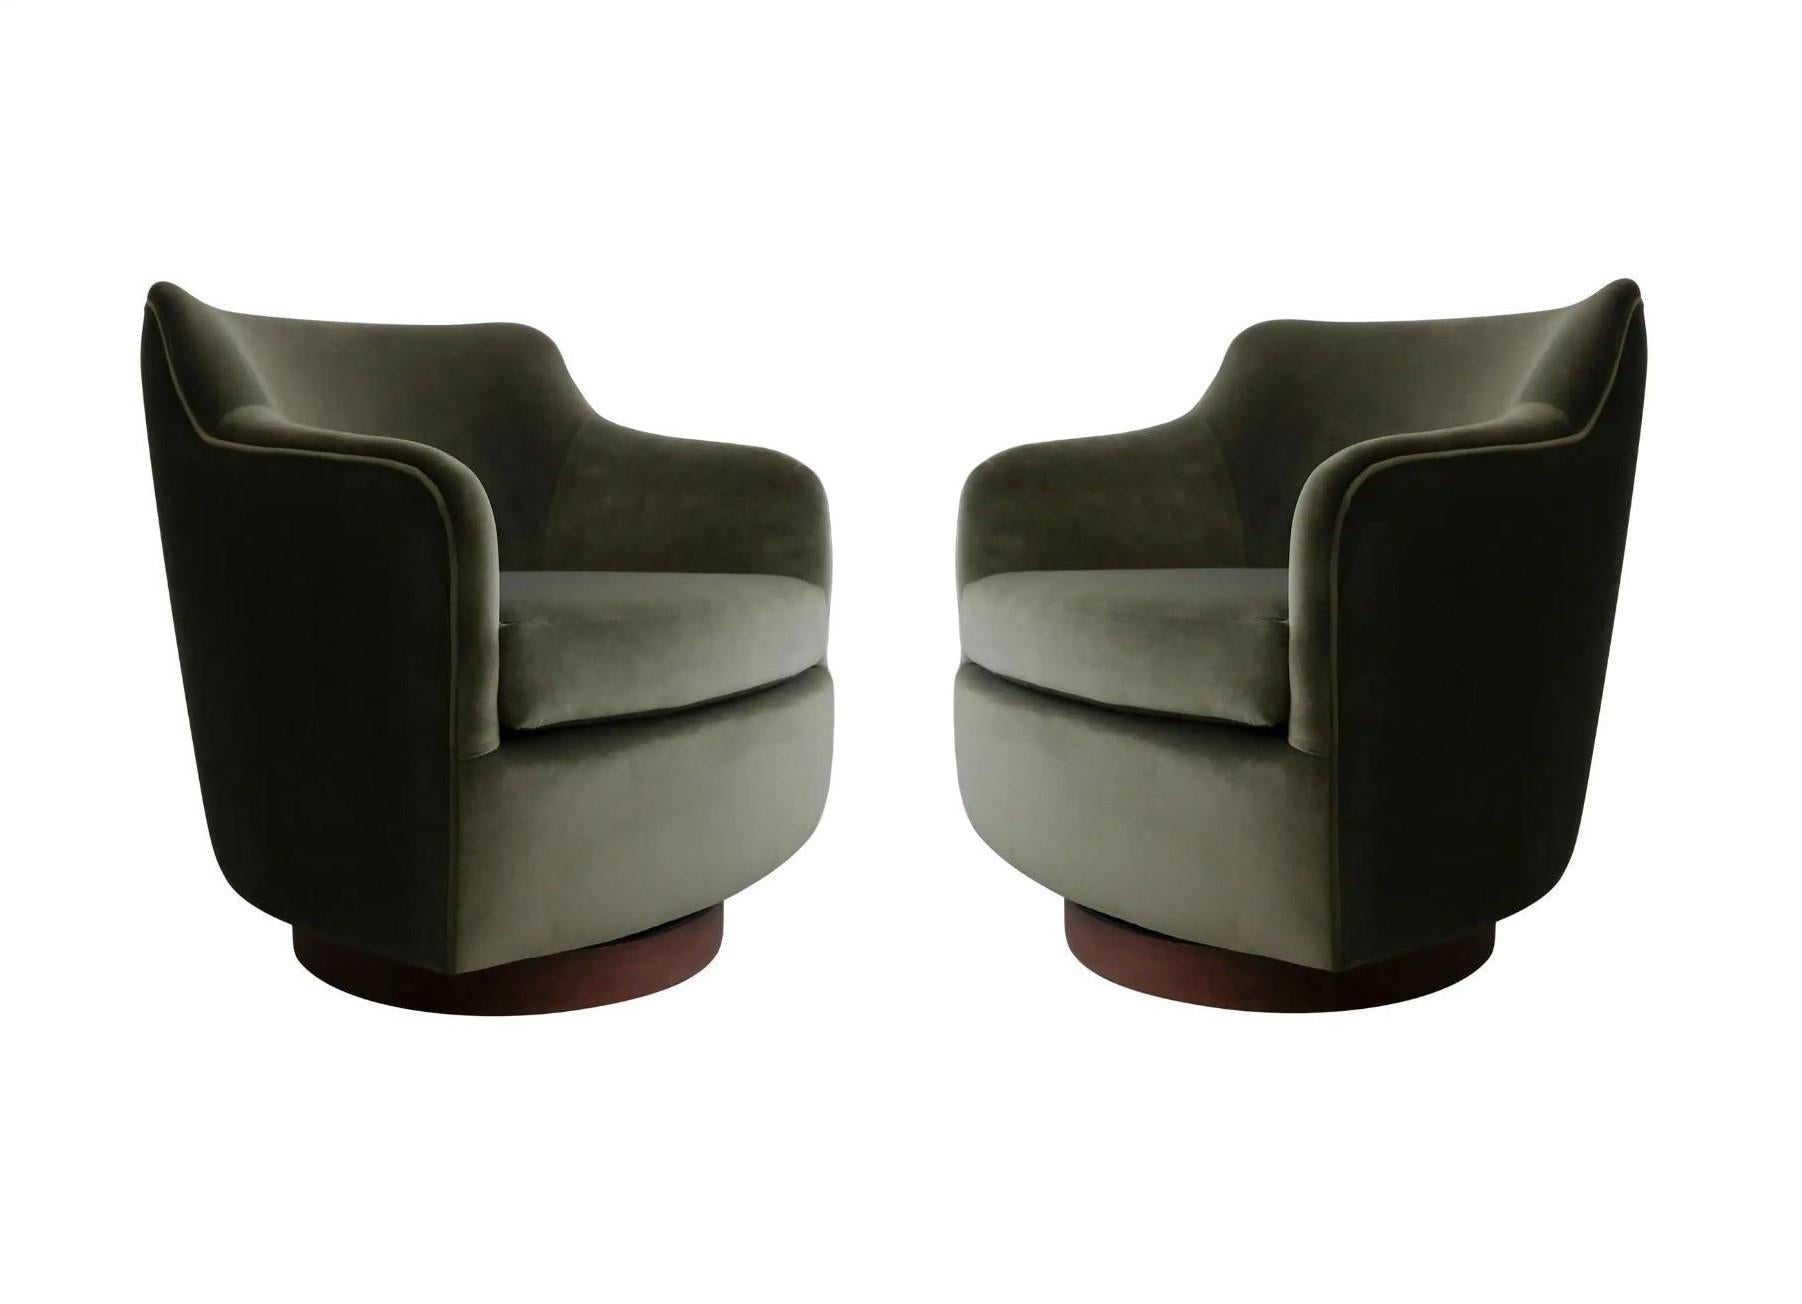 Un style intemporel et une confection exceptionnelle distinguent cette belle paire de fauteuils pivotants modèle 1170 conçue par l'estimé designer américain Milo Baughman pour Thayer coggin. Sa signature, définie par des lignes épurées et une